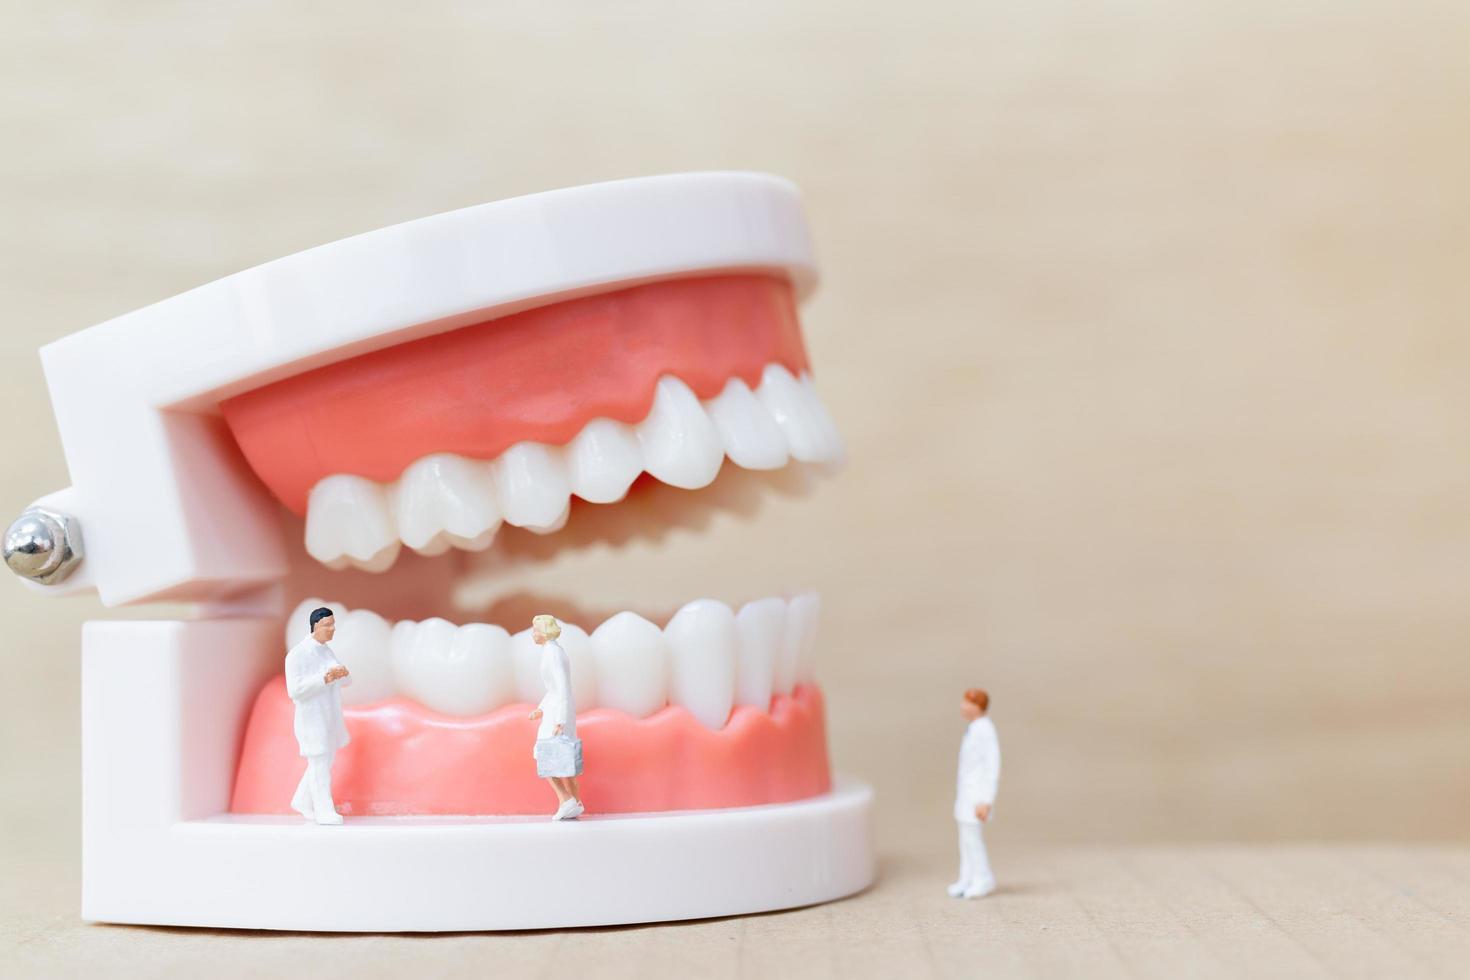 Miniaturzahnärzte und Krankenschwestern beobachten und diskutieren über menschliche Zähne mit Zahnfleisch und Zahnschmelzmodell auf einem hölzernen Hintergrund foto